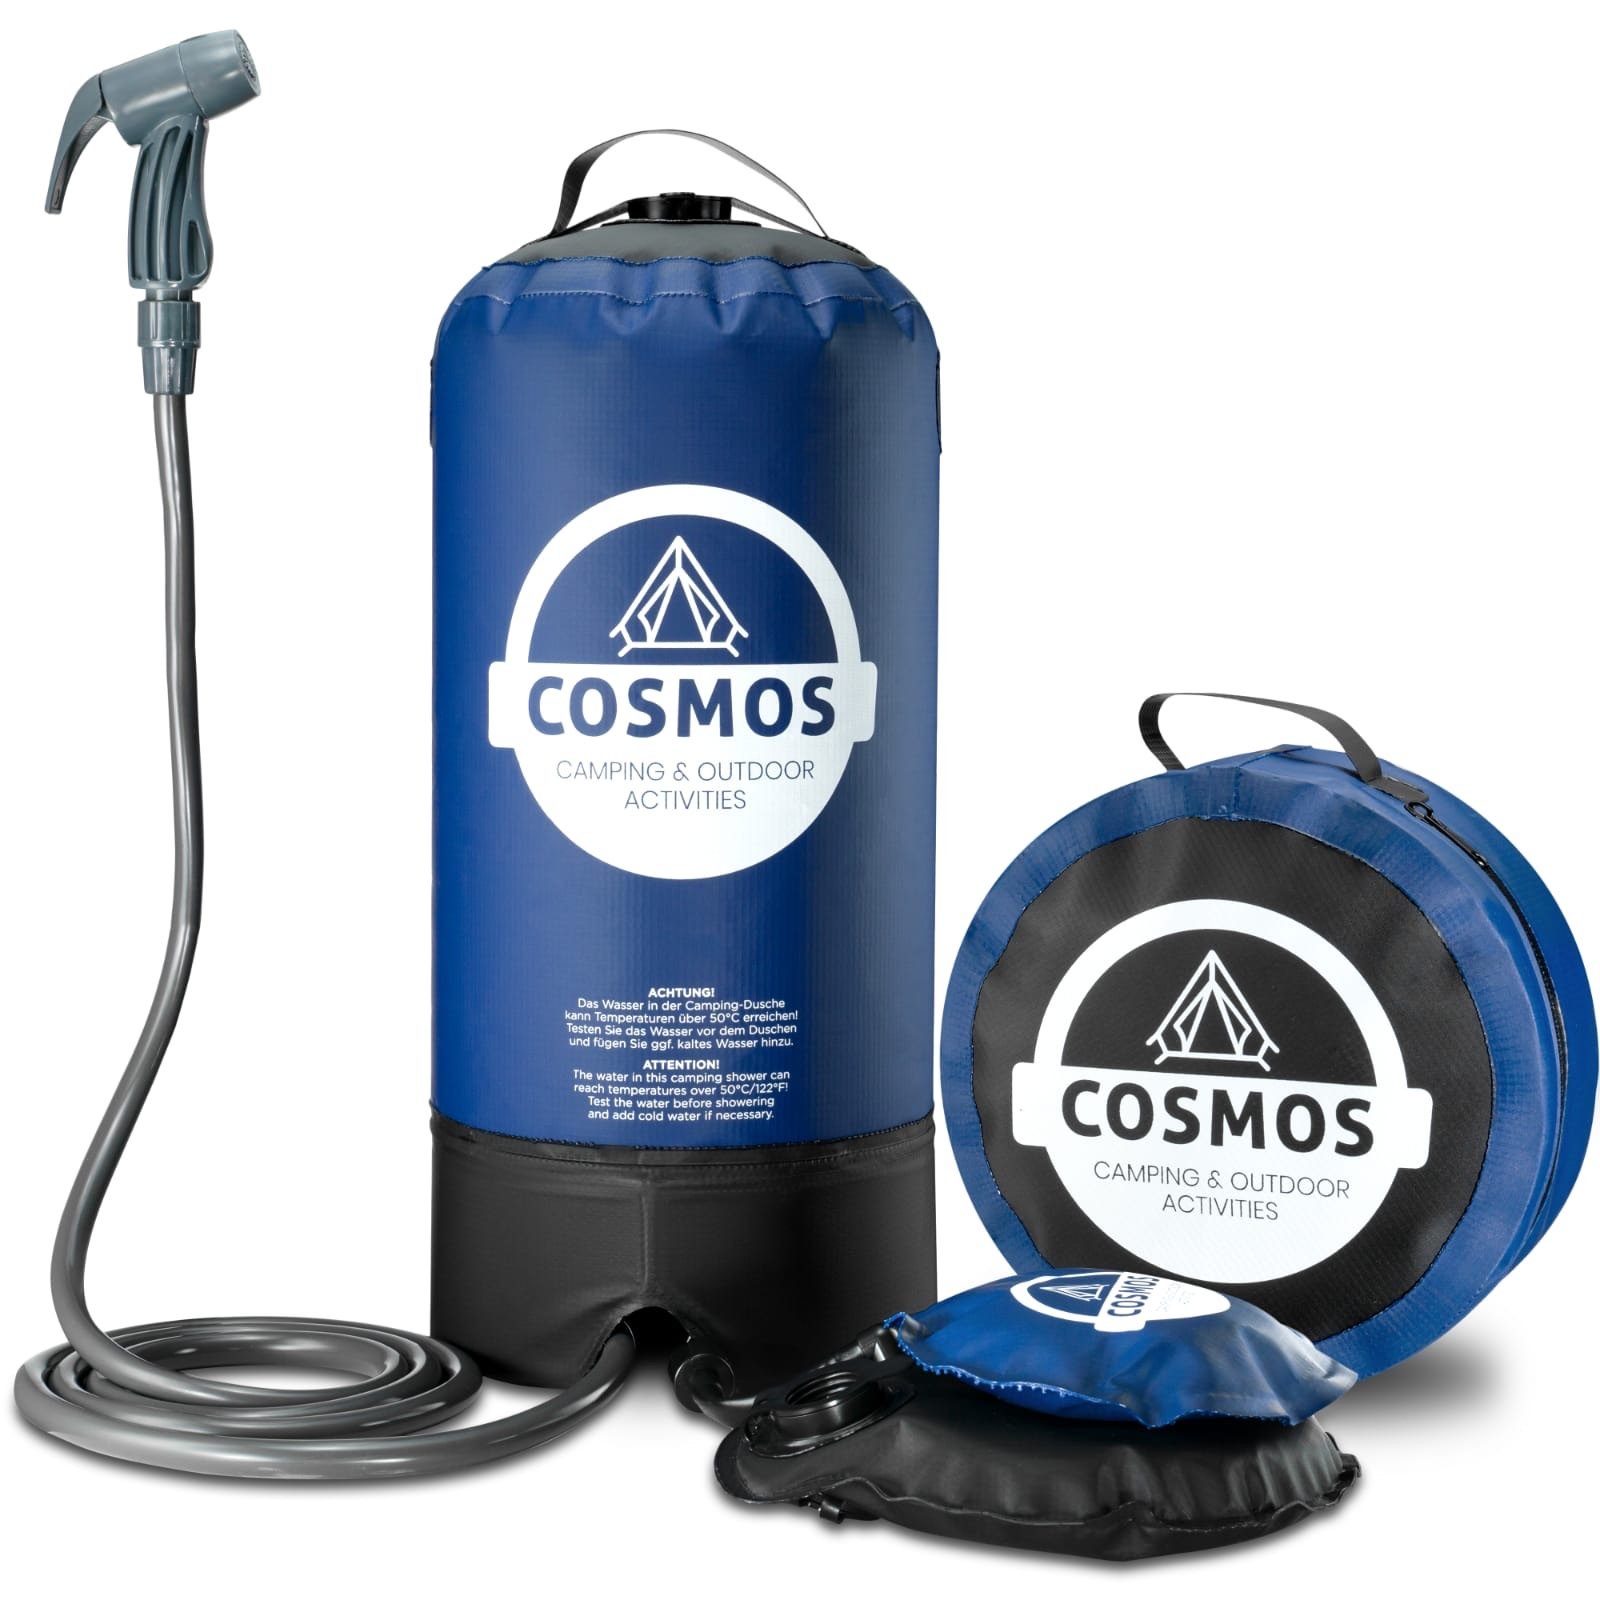 Cosmos Premium Products Gartendusche Cosmos Campingdusche - Tragbare Aussendusche mit Fuß-Wasserpumpe, Wasserbehälter aus 500D-PVC-Gewebe,2 Meter Schlauch inkl. Duschbrause